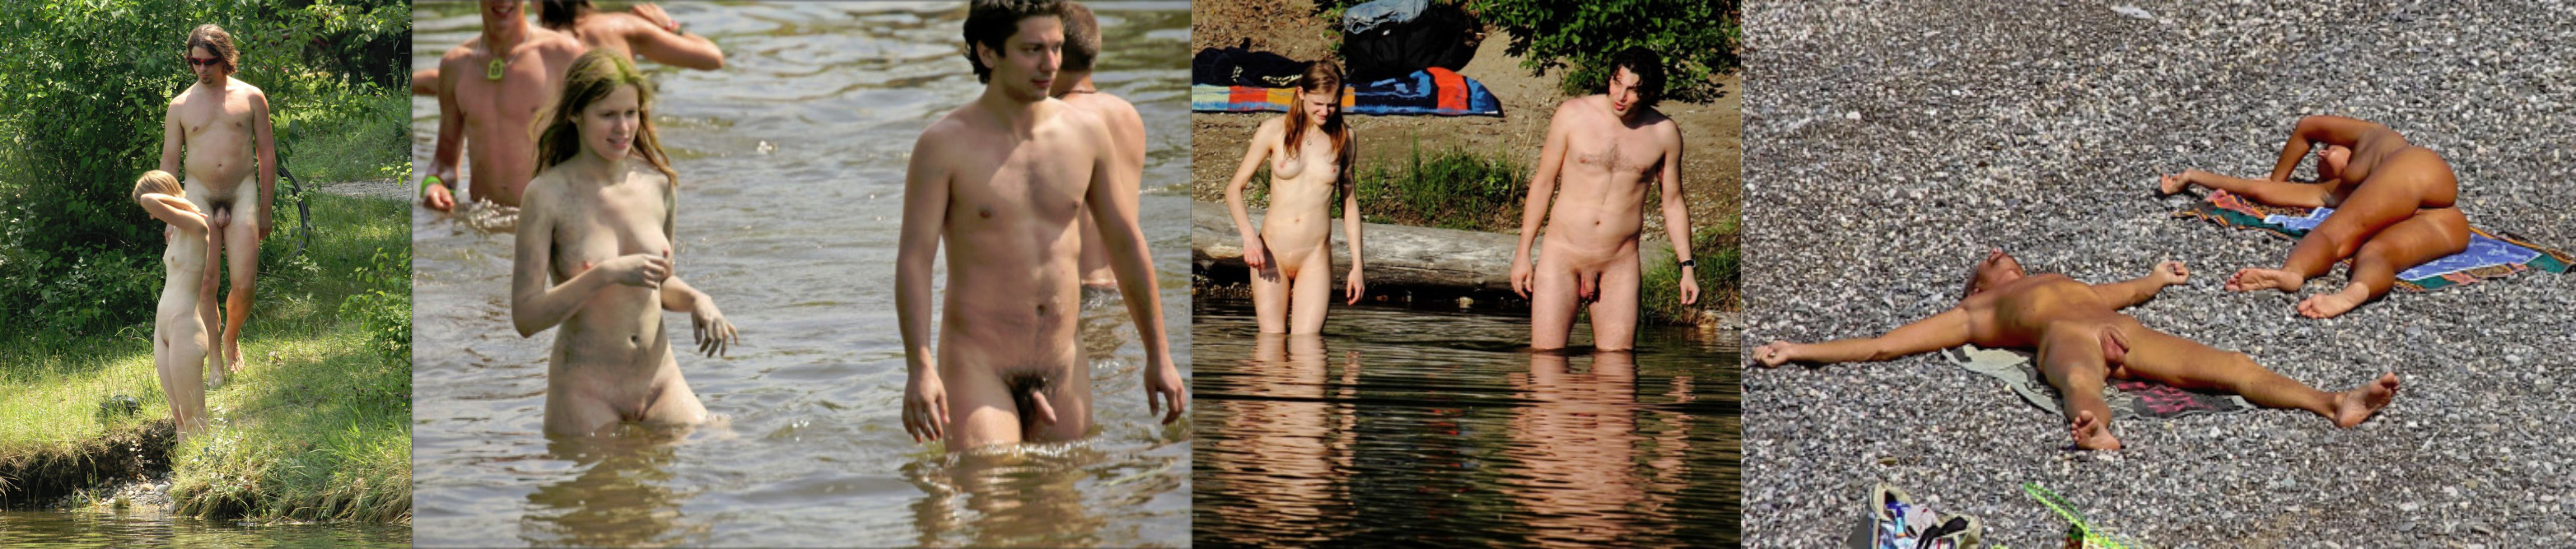 straight nudist men caught on the beach